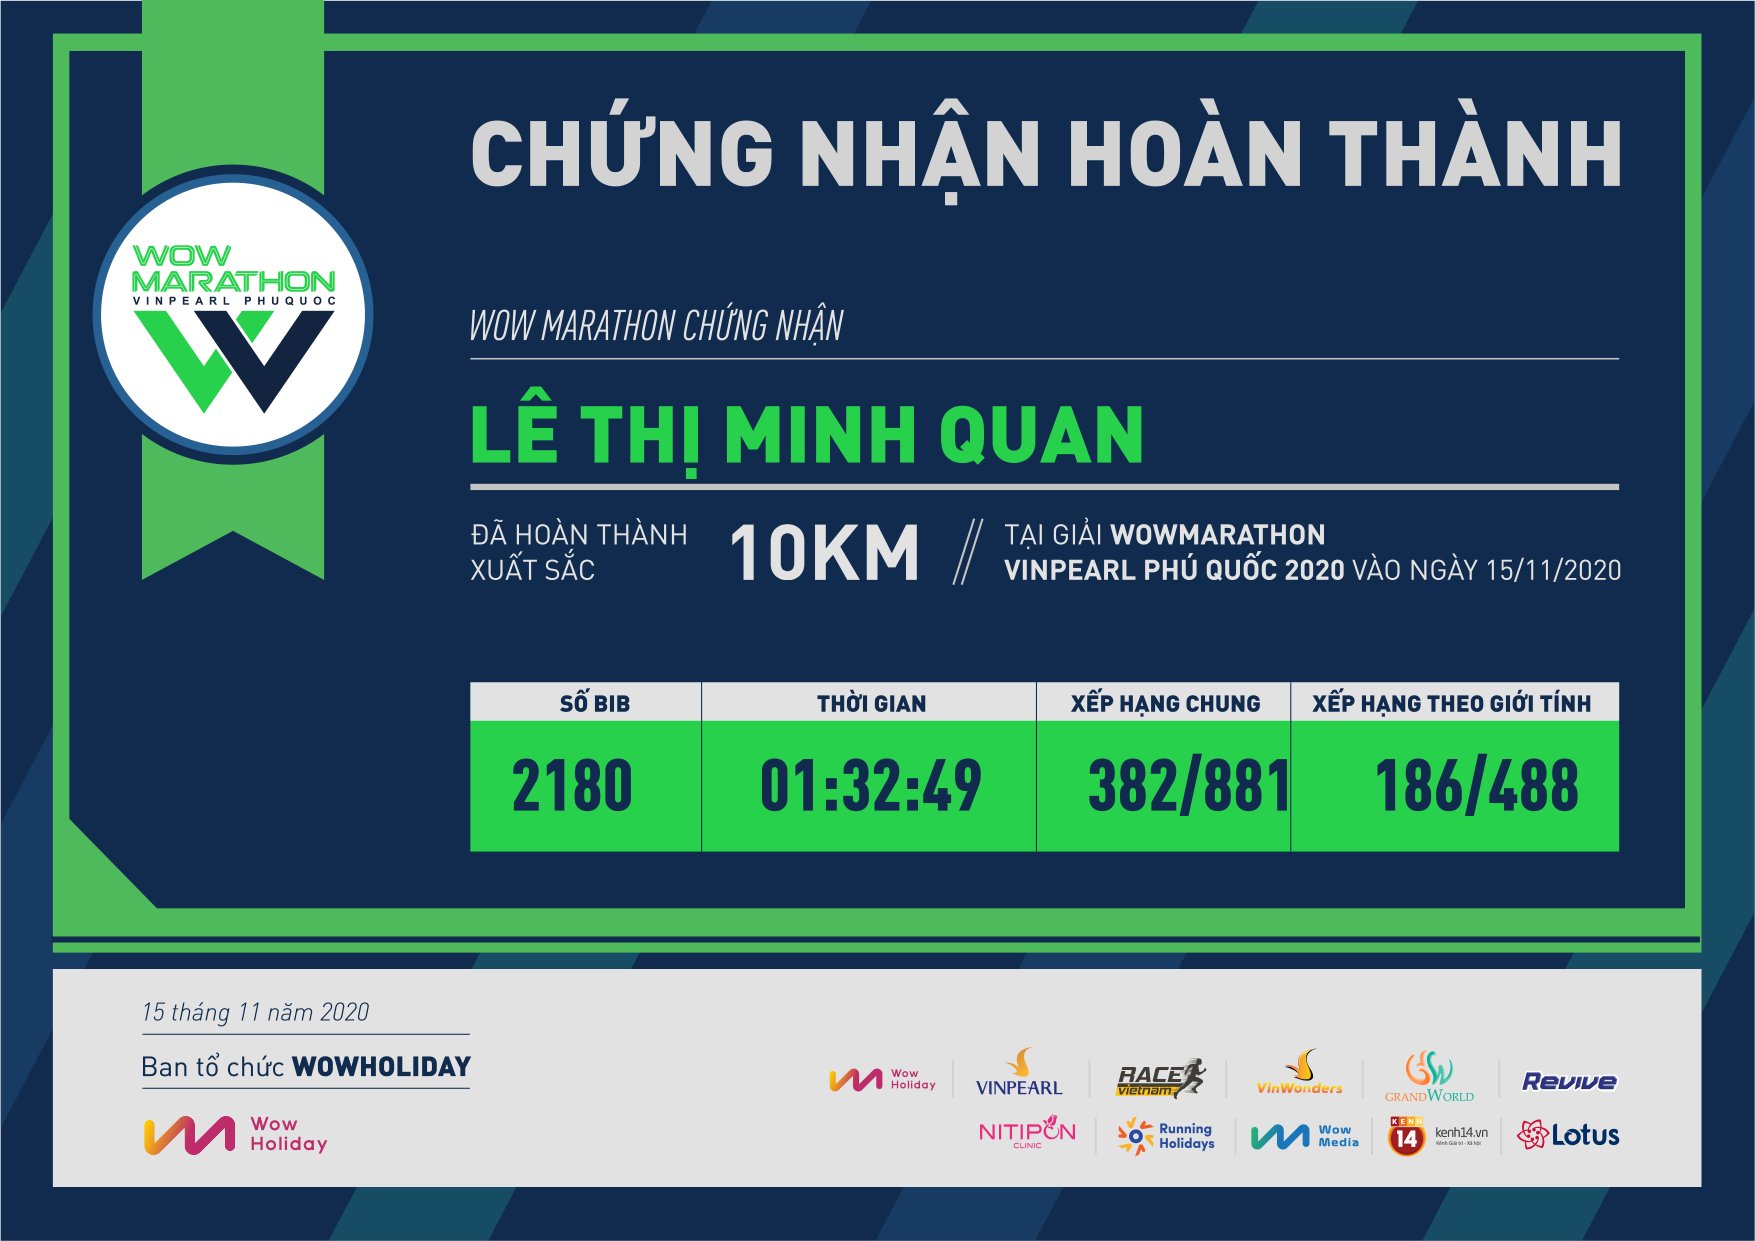 2180 - Lê Thị Minh Quan